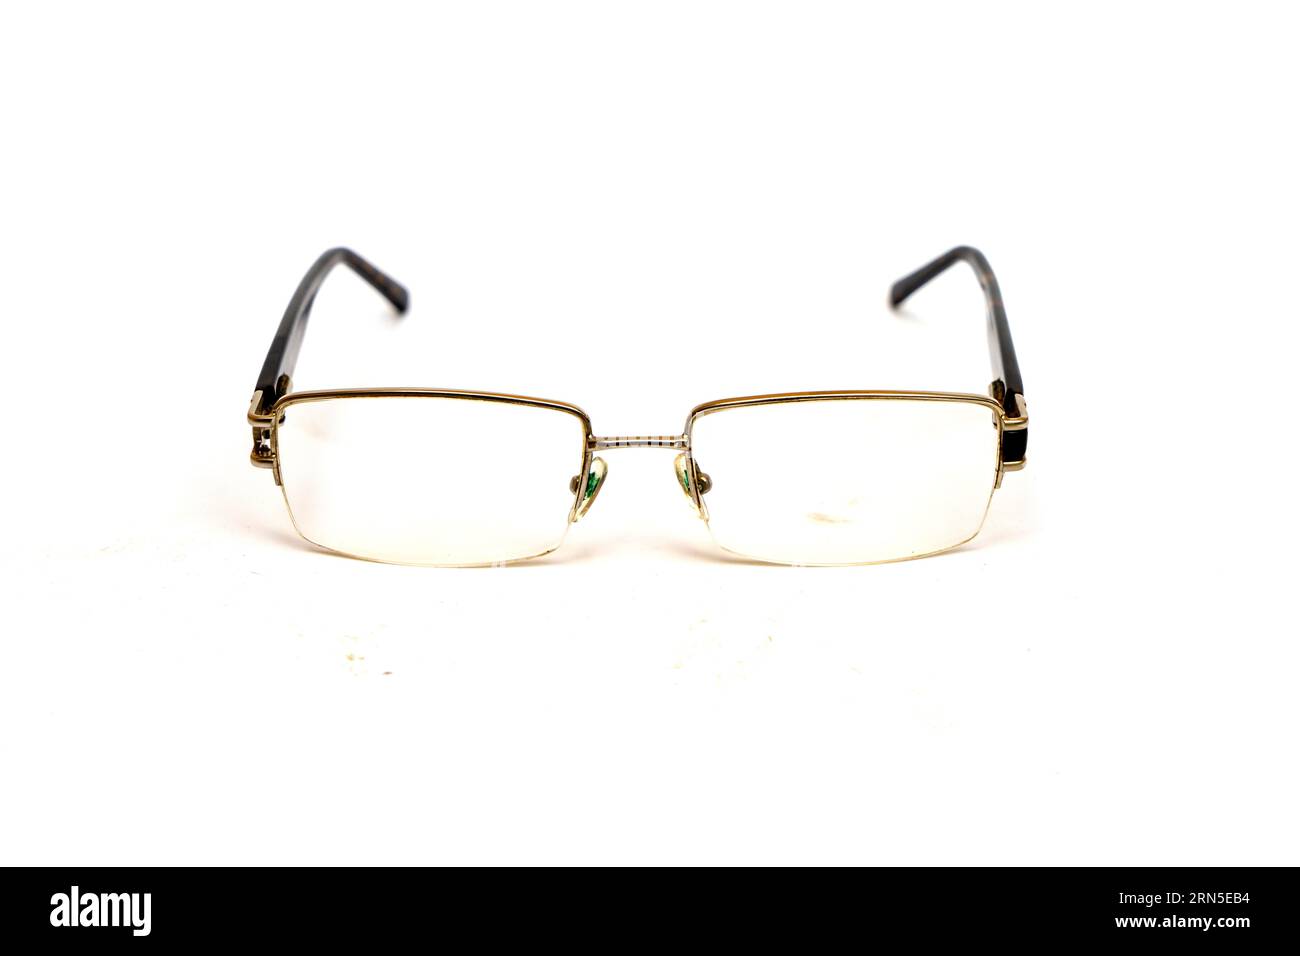 Kurzsichtige oder kurzsichtige Brille auf weißem Hintergrund, selektiver Fokus, optisches Konzept Stockfoto